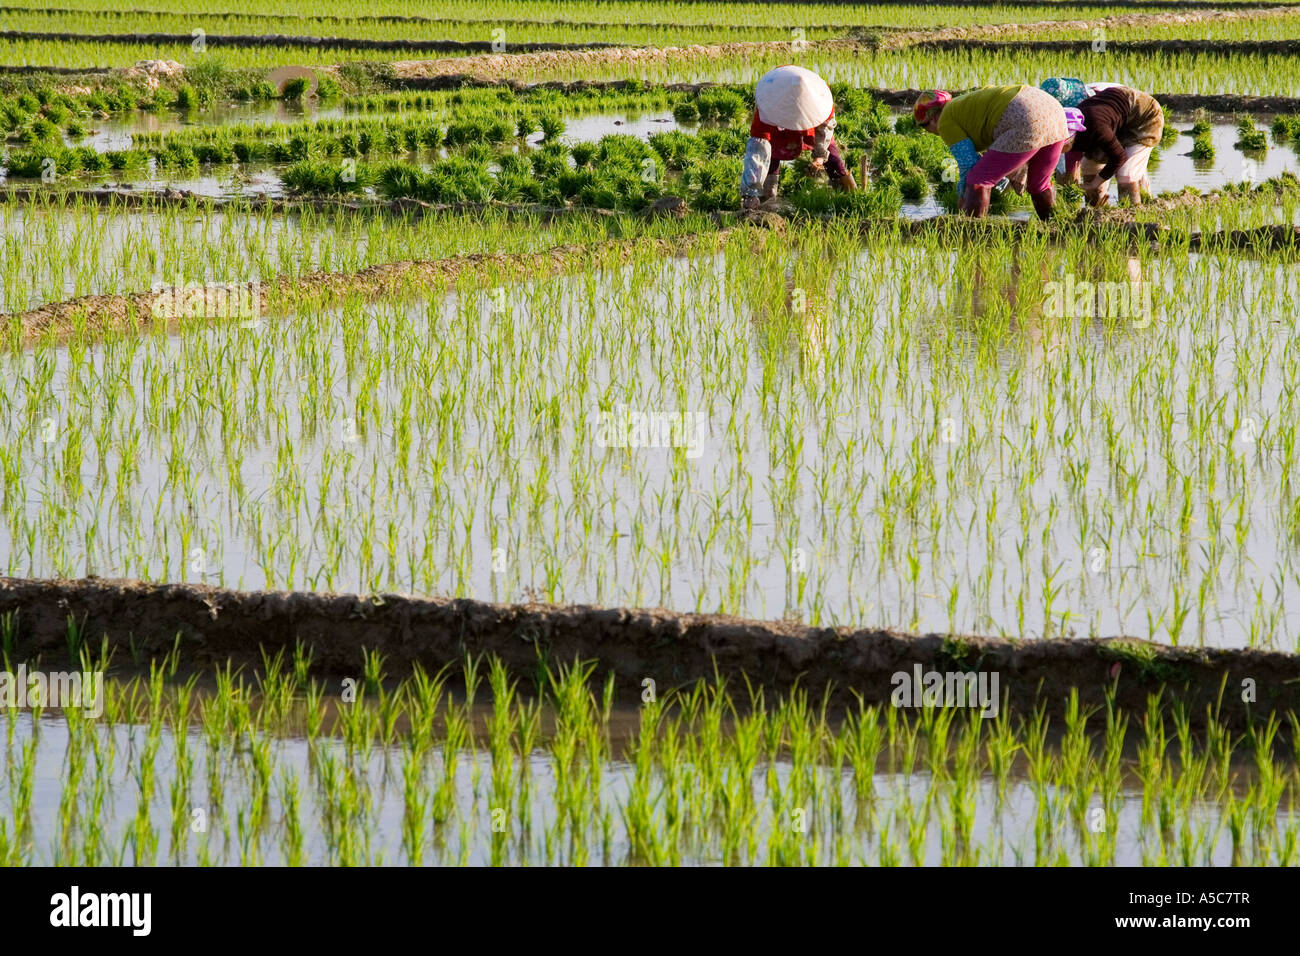 Les agriculteurs chinois le repiquage du riz dans les champs Jinghong, Chine Banque D'Images